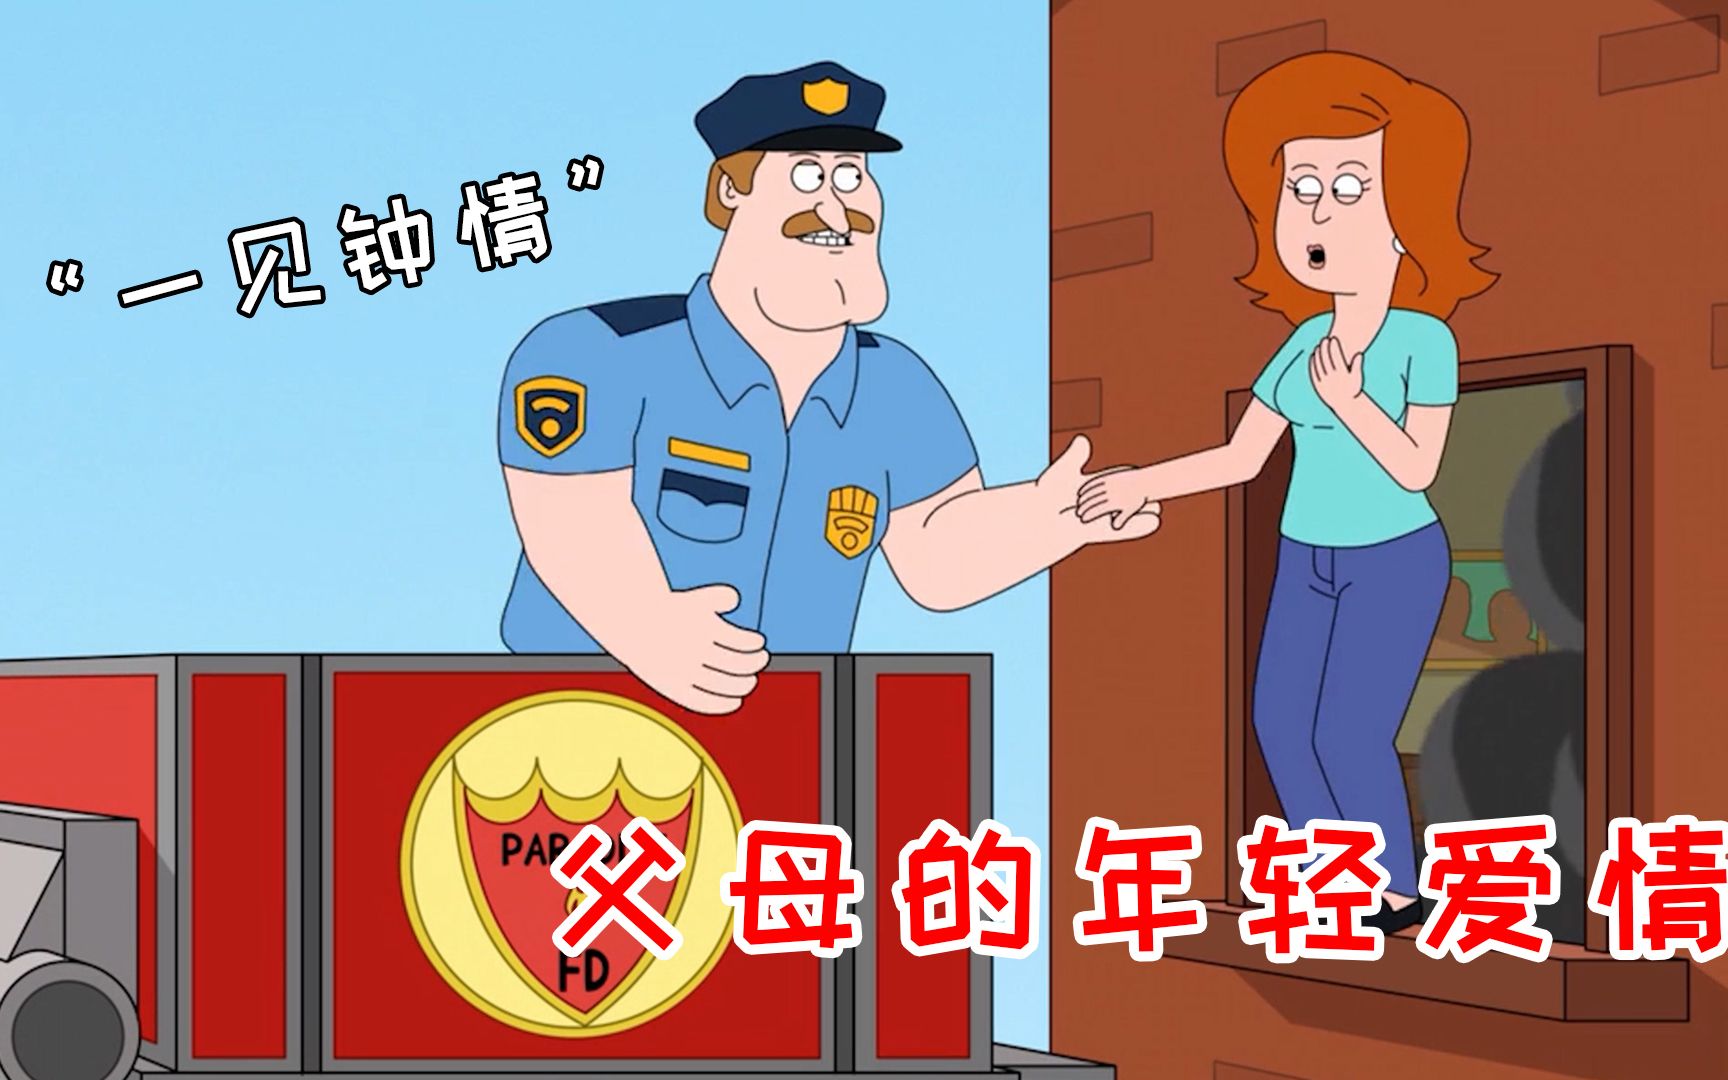 市警5分局举办社区警民会议 扒窃频发 华裔民众需防范-侨报网